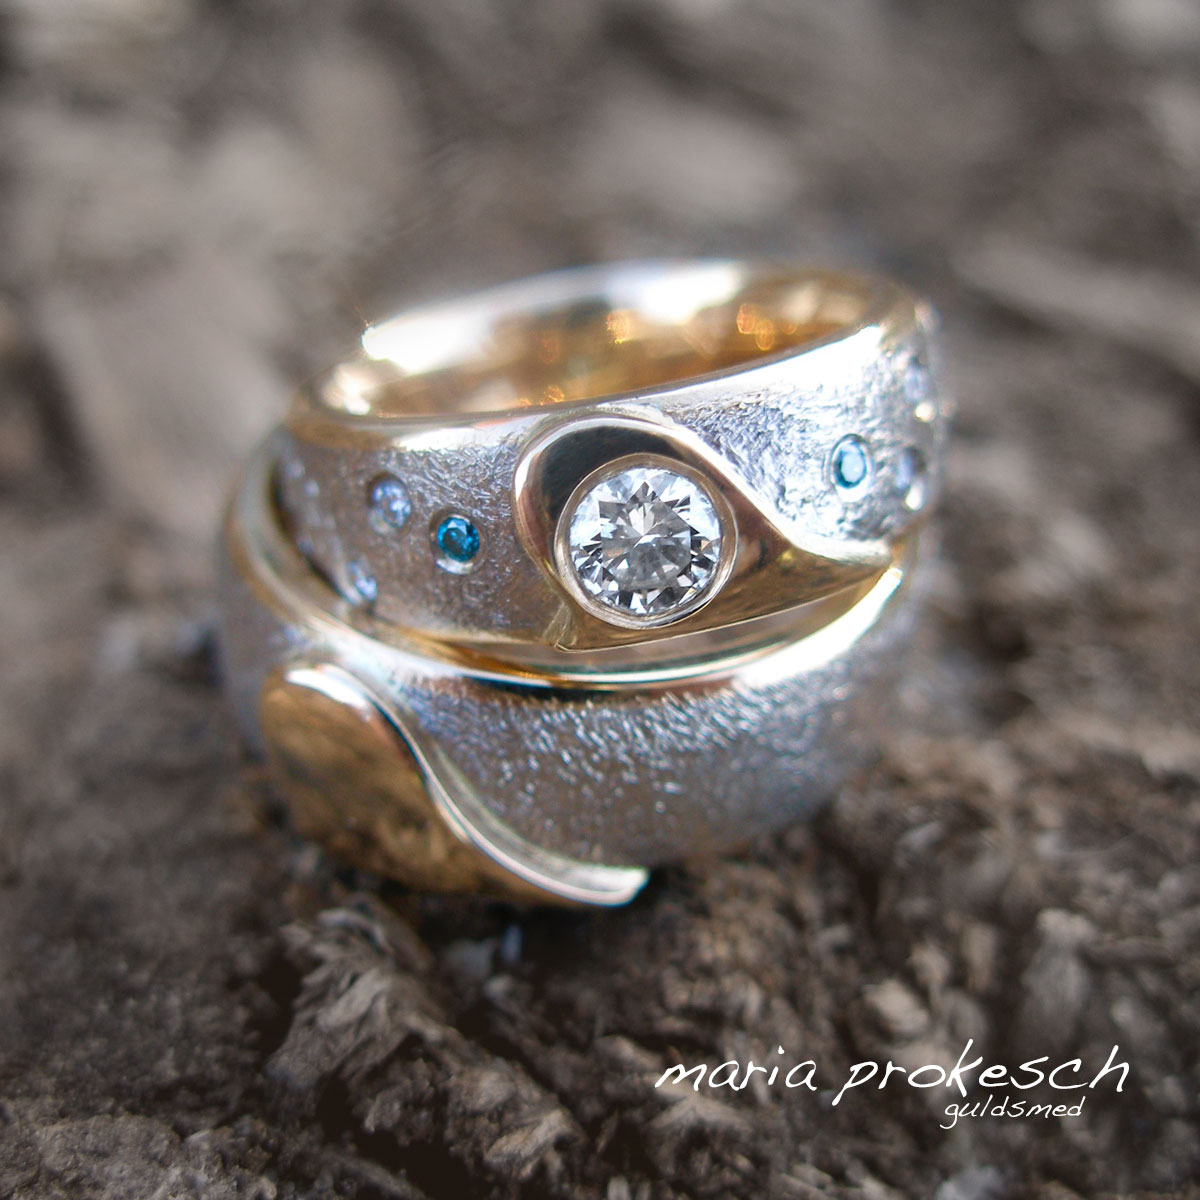 Tofarvede guld, gult guld og hvidguld, i anderledes design. Begge ringe har lidt over et halvt hjerte som en personlig detalje. I hendes ring er der både en stor diamant og flere små sten.